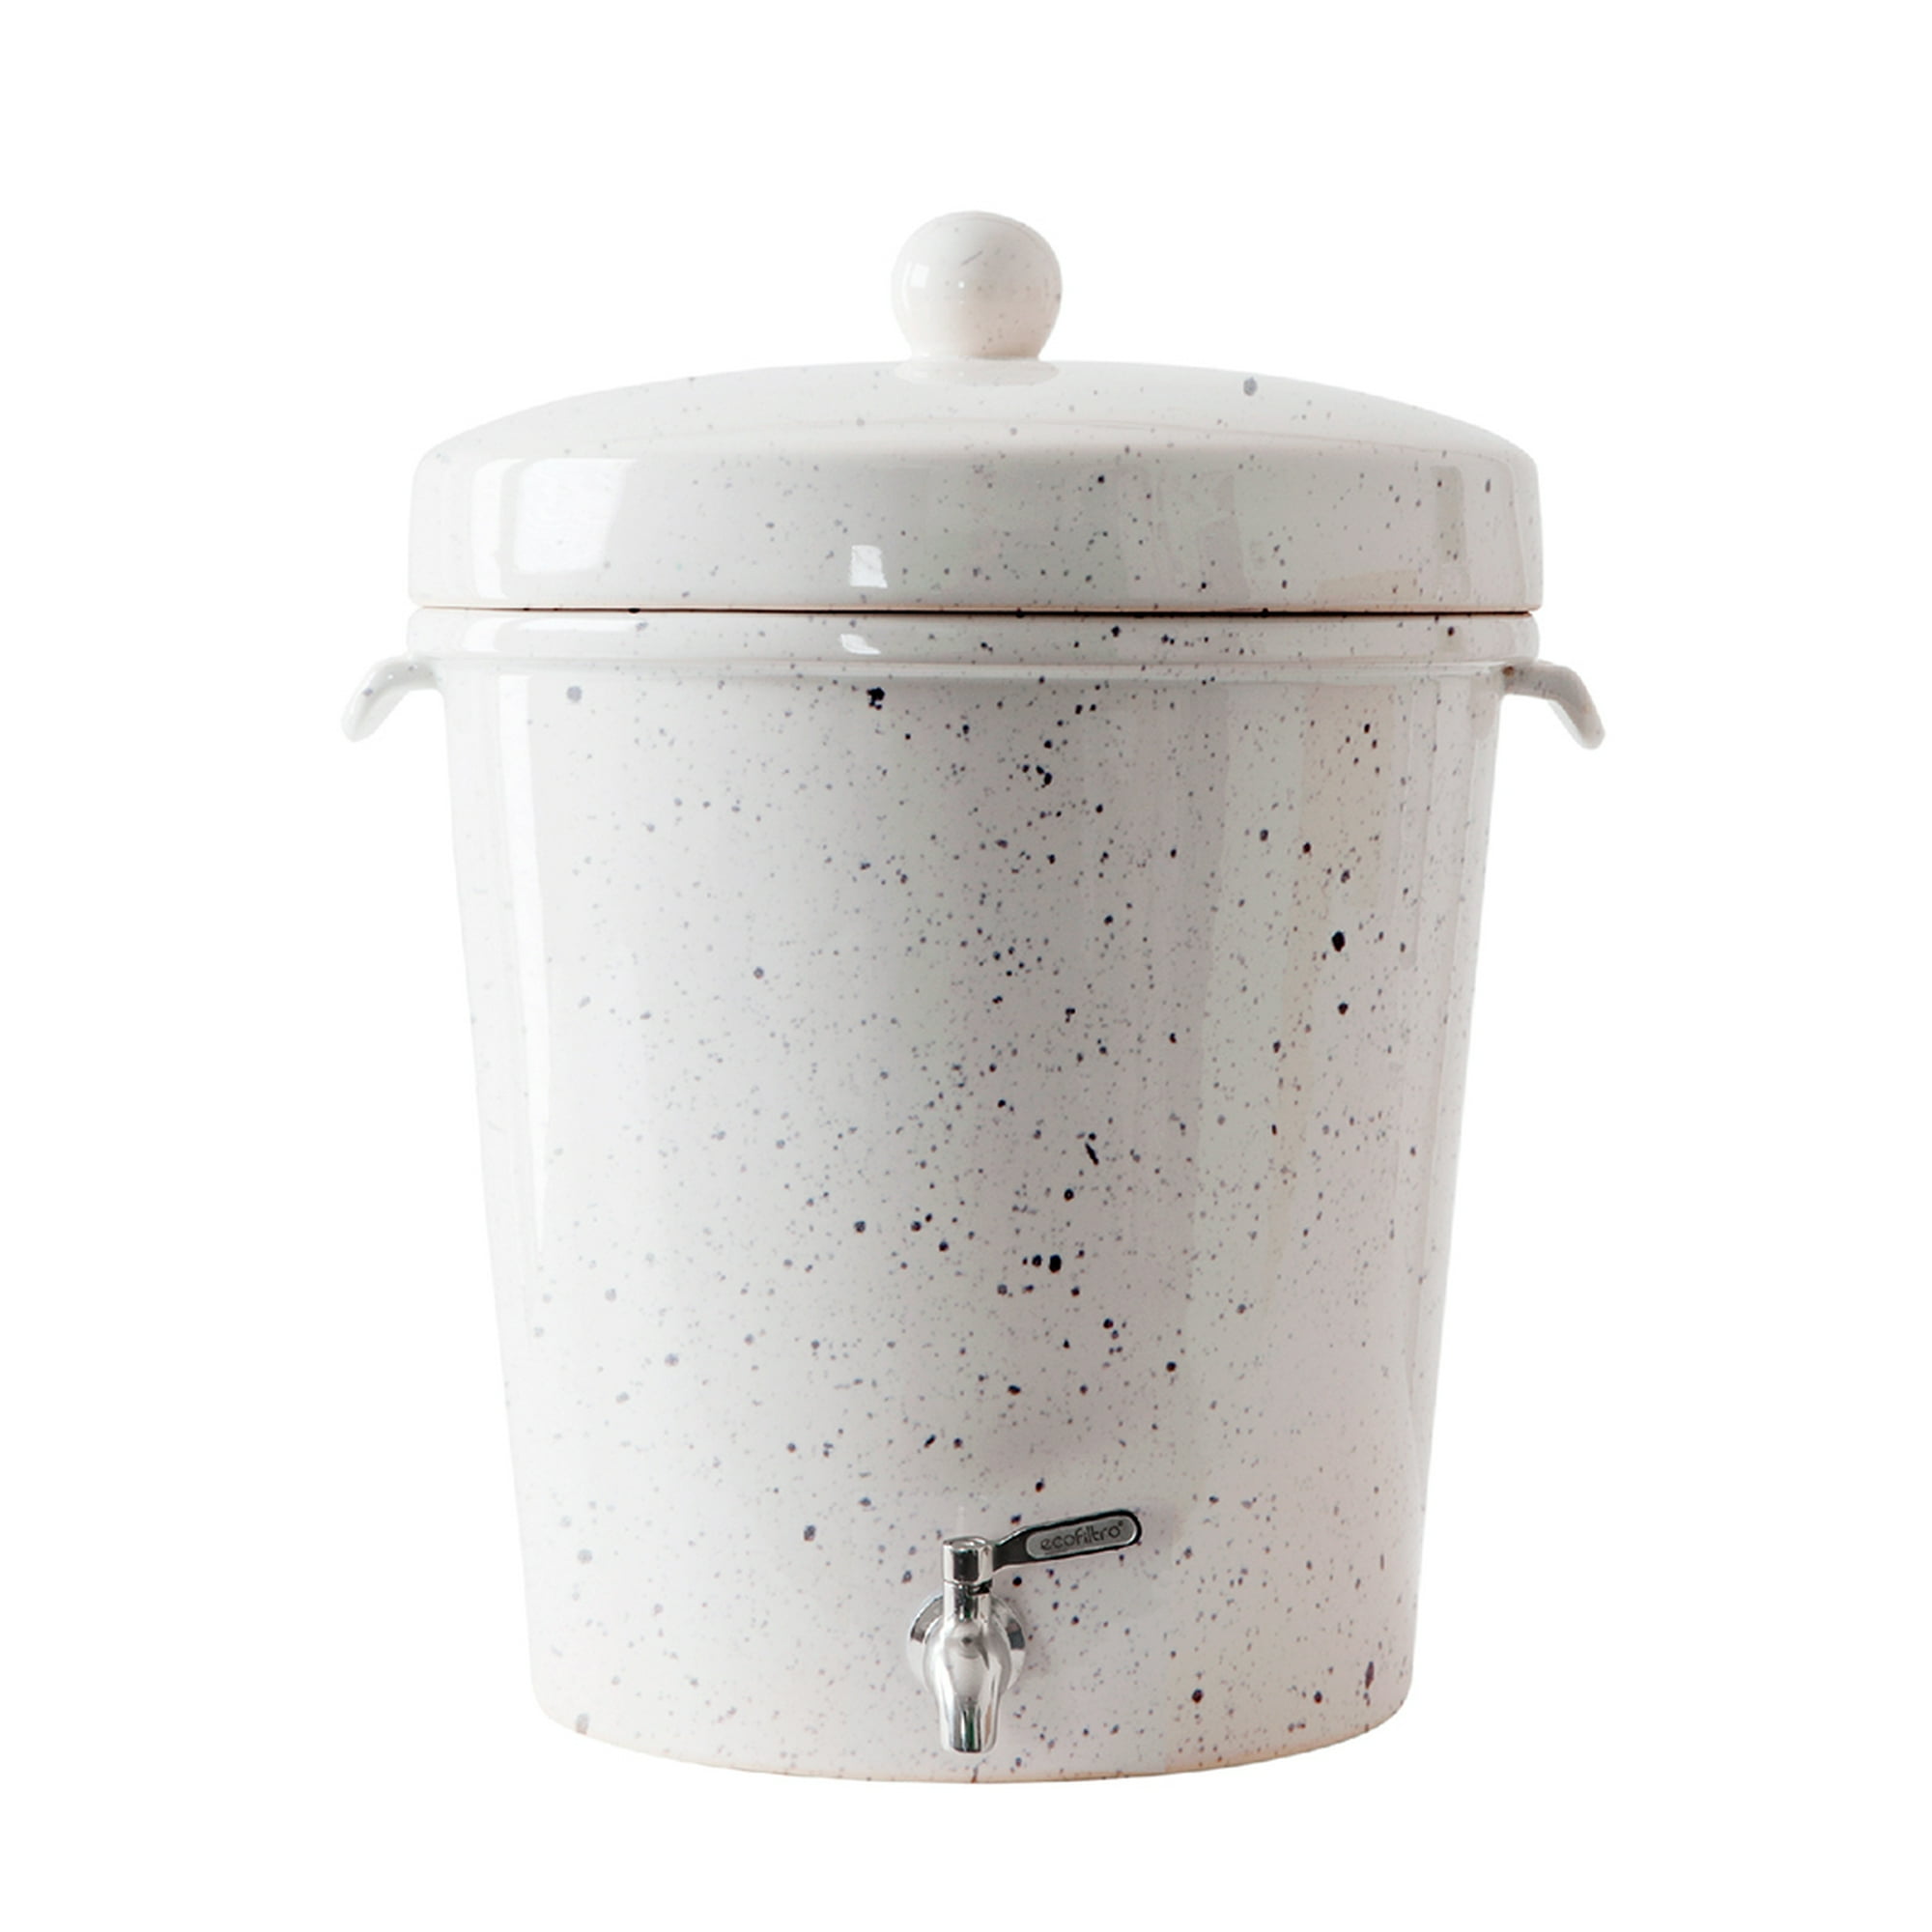 Ecofiltro purificador dispensador y filtro de agua cerámica 20l color blanco puntos ecológico con carbón activado